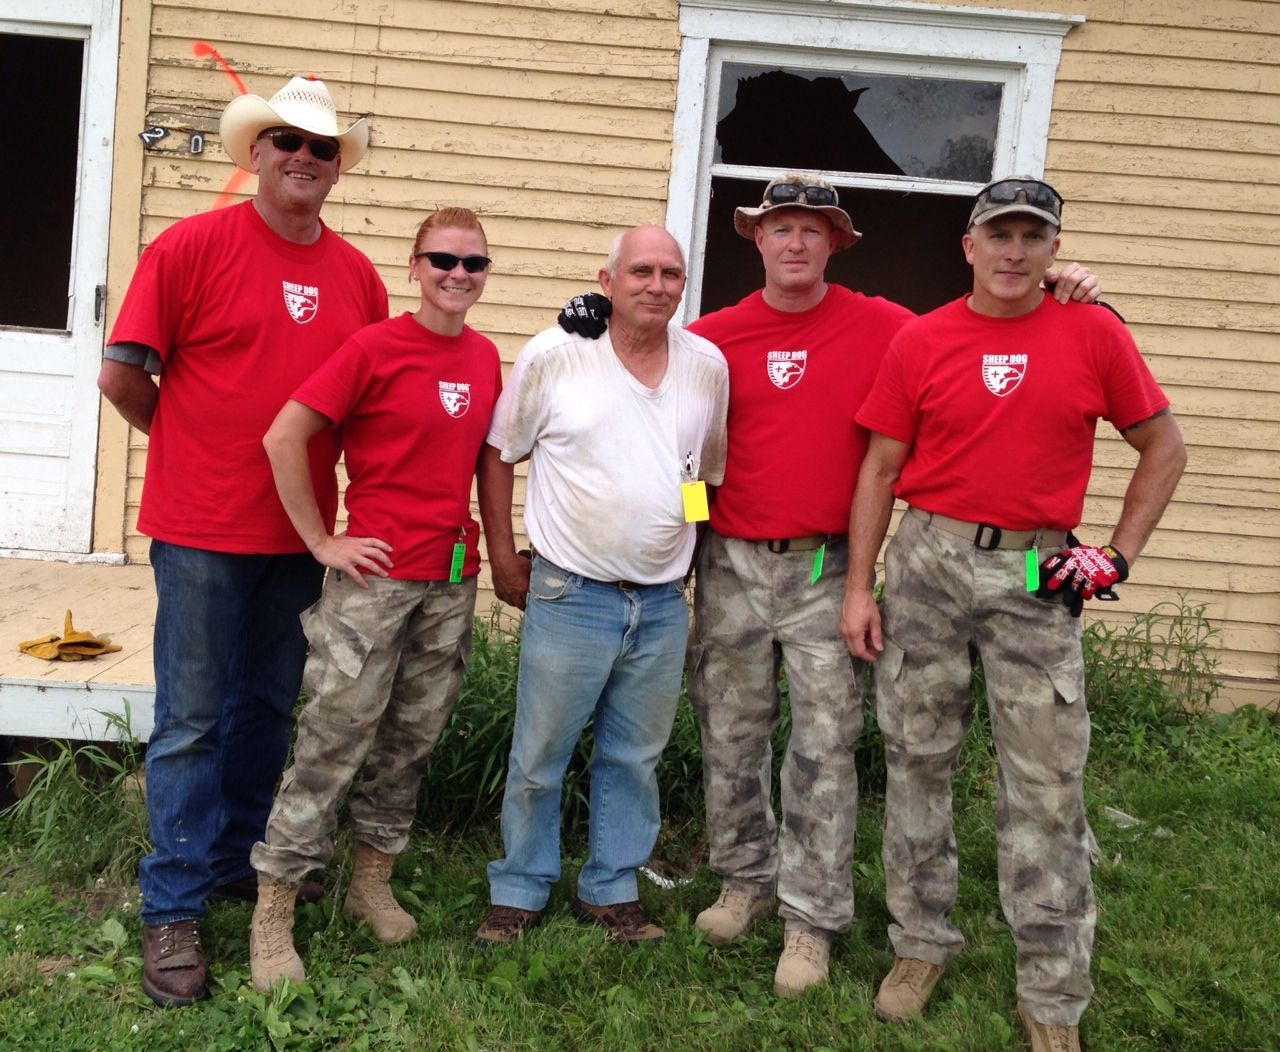 Pilger, Nebraska – Disaster Relief Efforts